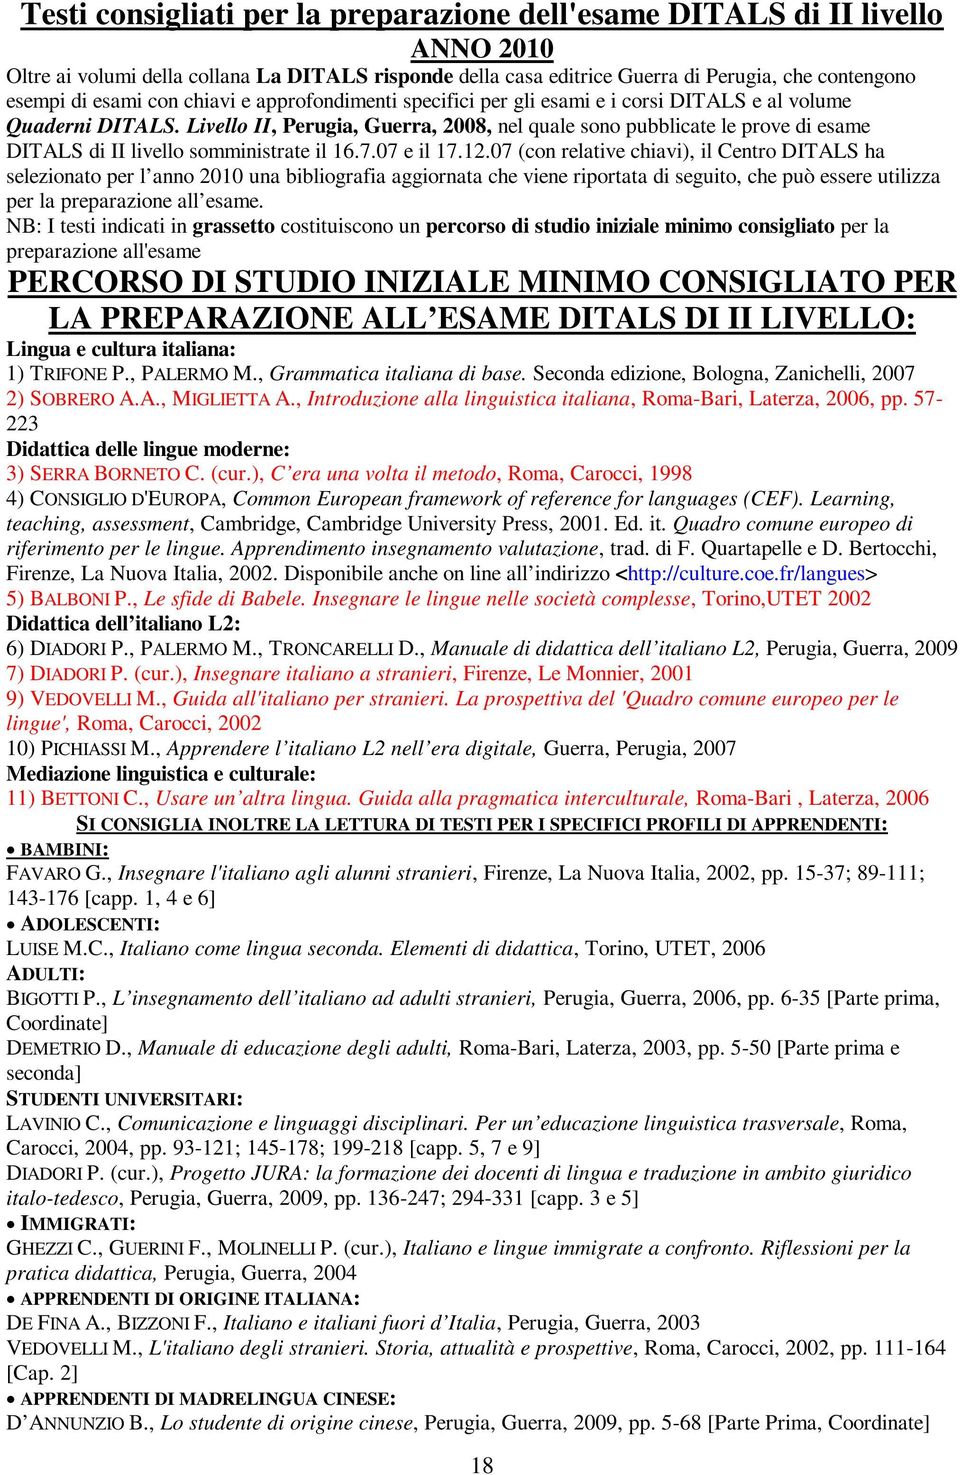 Livello II, Perugia, Guerra, 2008, nel quale sono pubblicate le prove di esame DITALS di II livello somministrate il 16.7.07 e il 17.12.